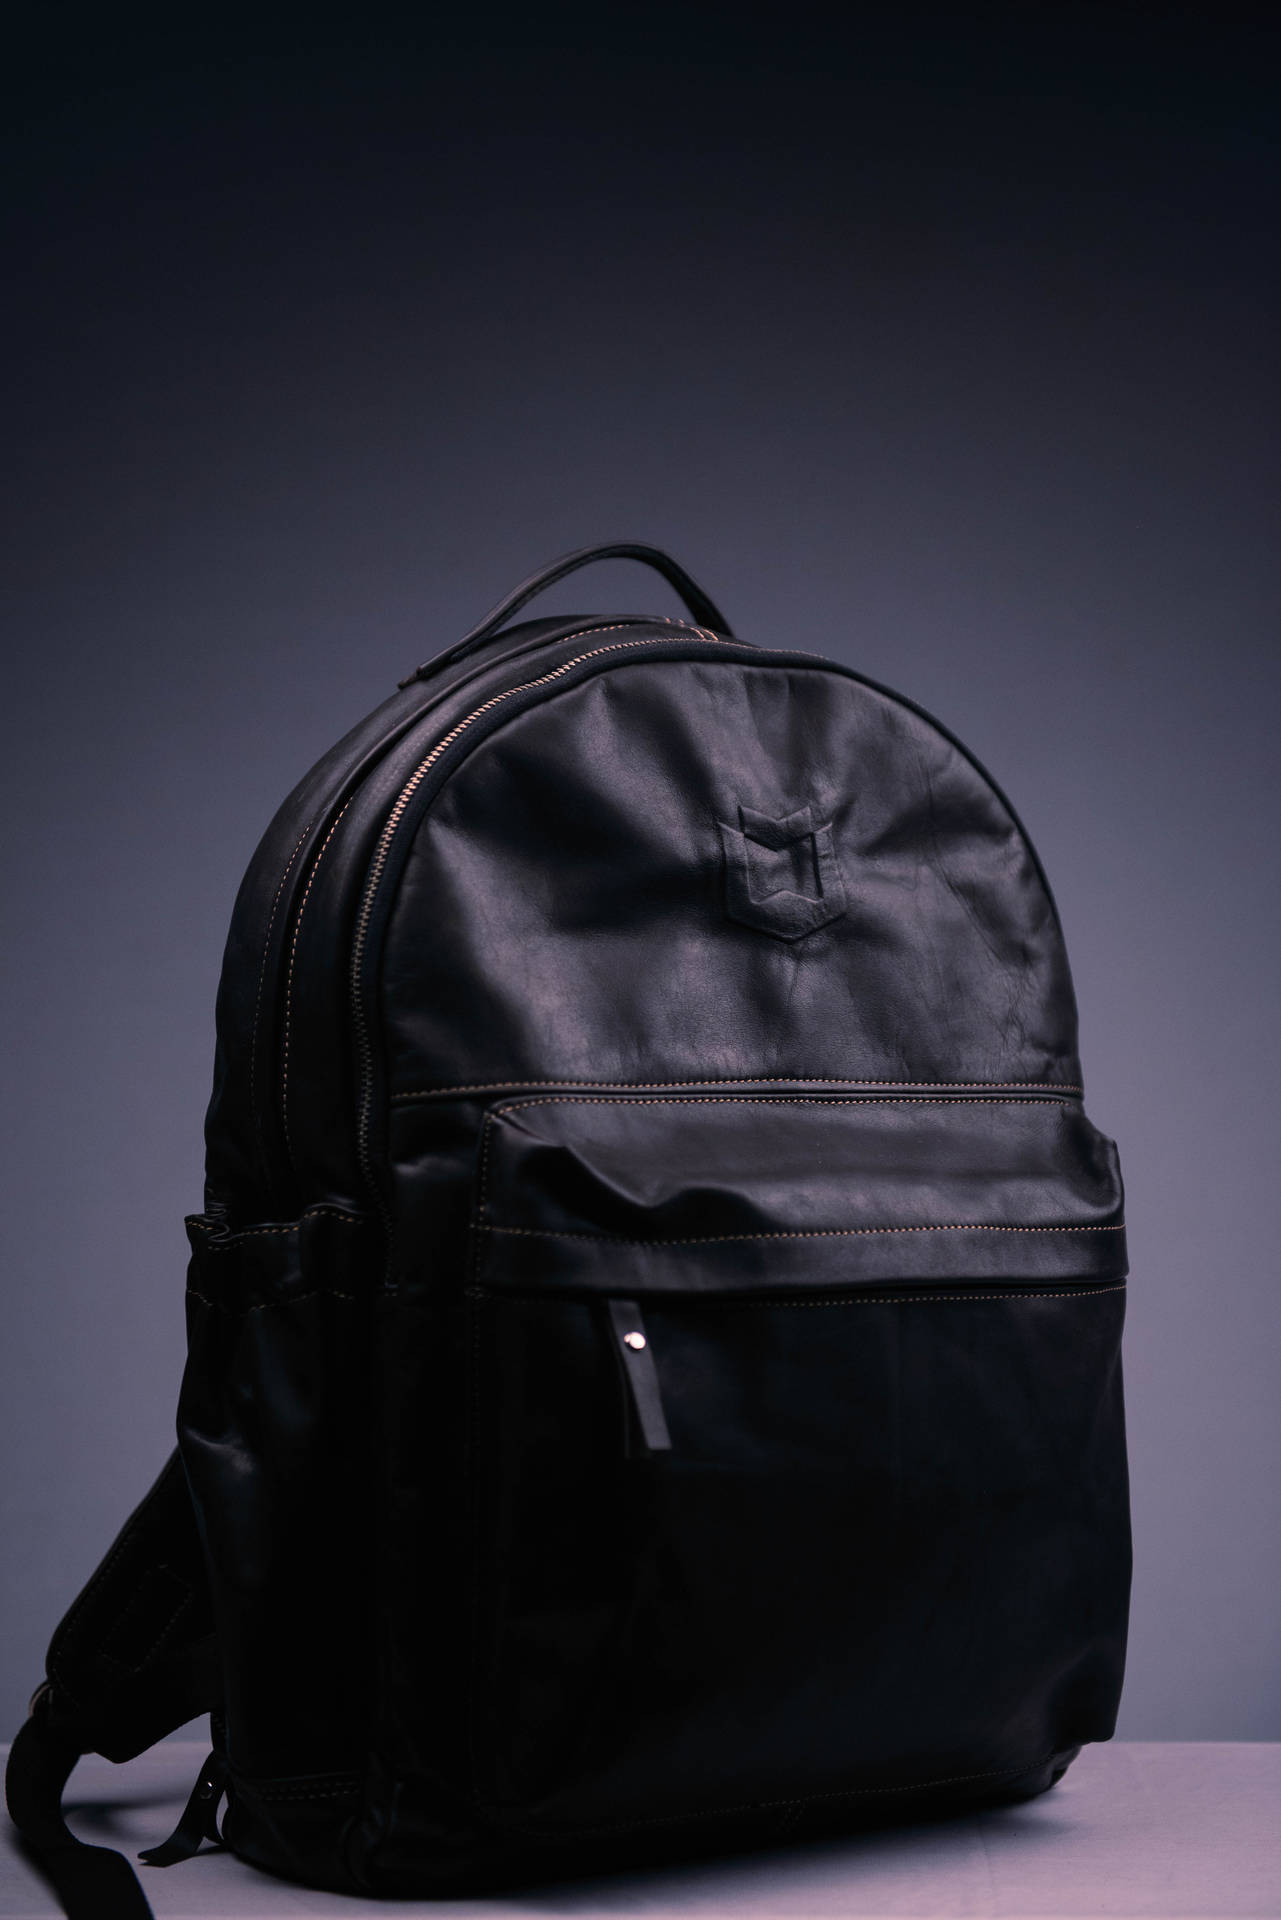 Simple Dark Aesthetic Black Backpack Wallpaper